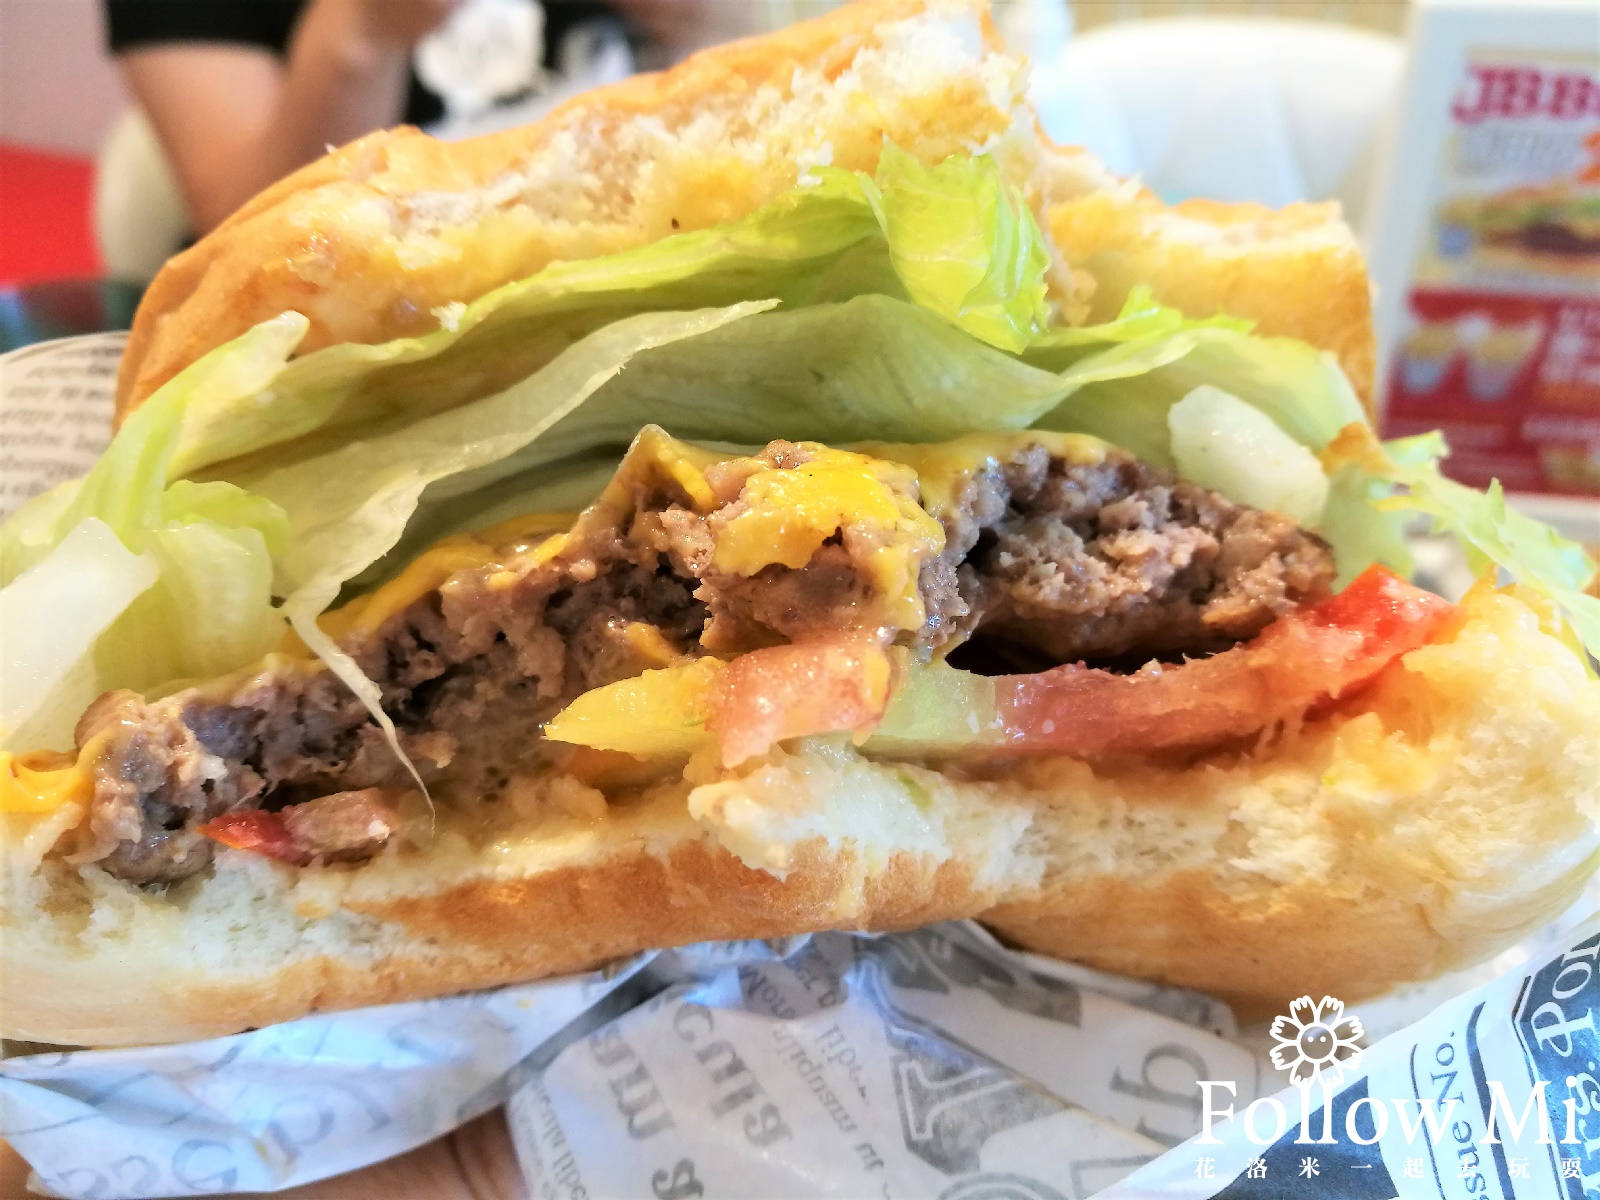 JB burger,台北美食,大安區,青田街